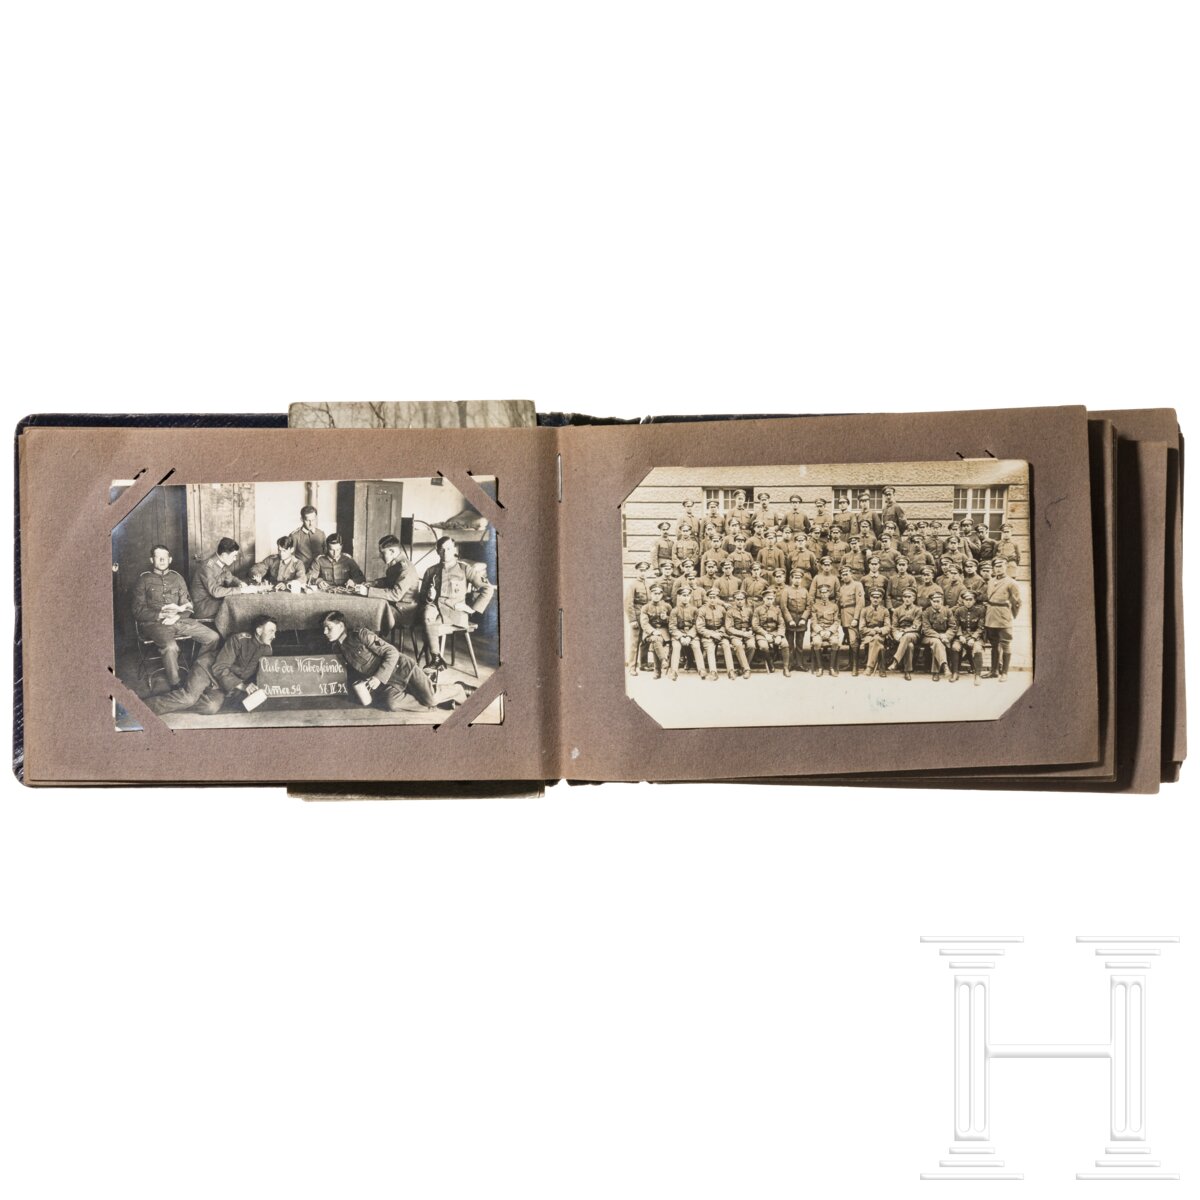 Militärisches Fotoalbum, zwei Koppelschlösser, Auszeichnungen etc., um 1870 - 1945 - Image 4 of 7